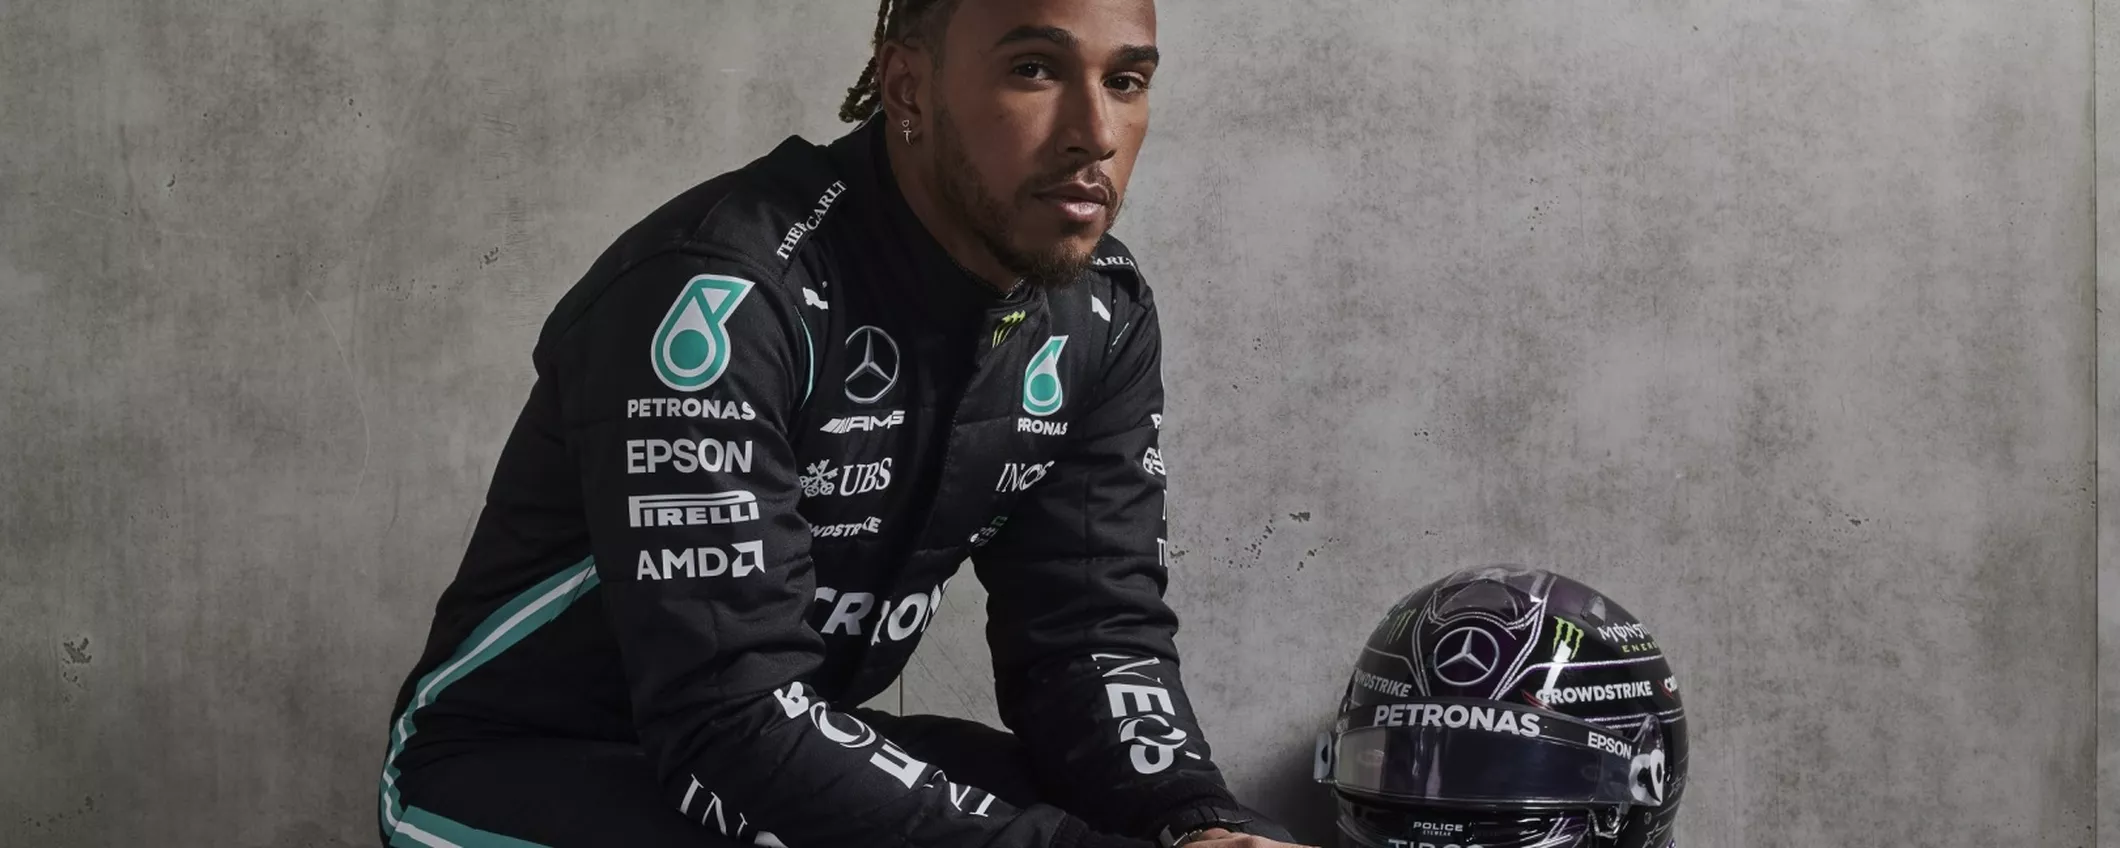 Lewis Hamilton, il campione di F1 protagonista di un documentario Apple TV+